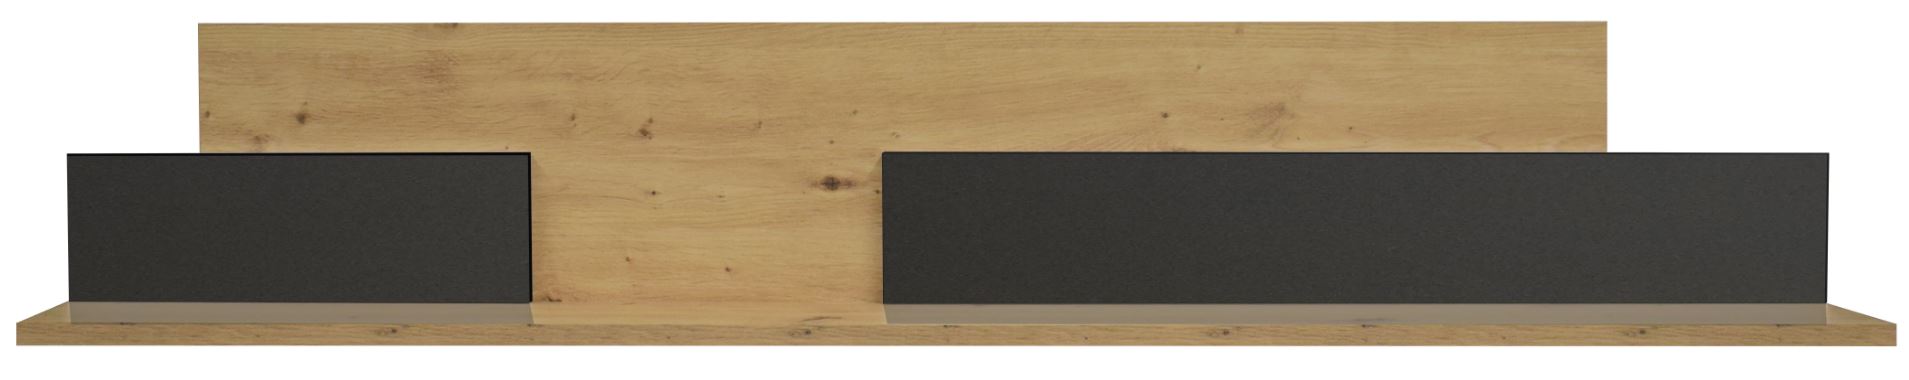 Colombus falipolc, anthracit matt lakk/csomóstölgy, 150x25x17 cm